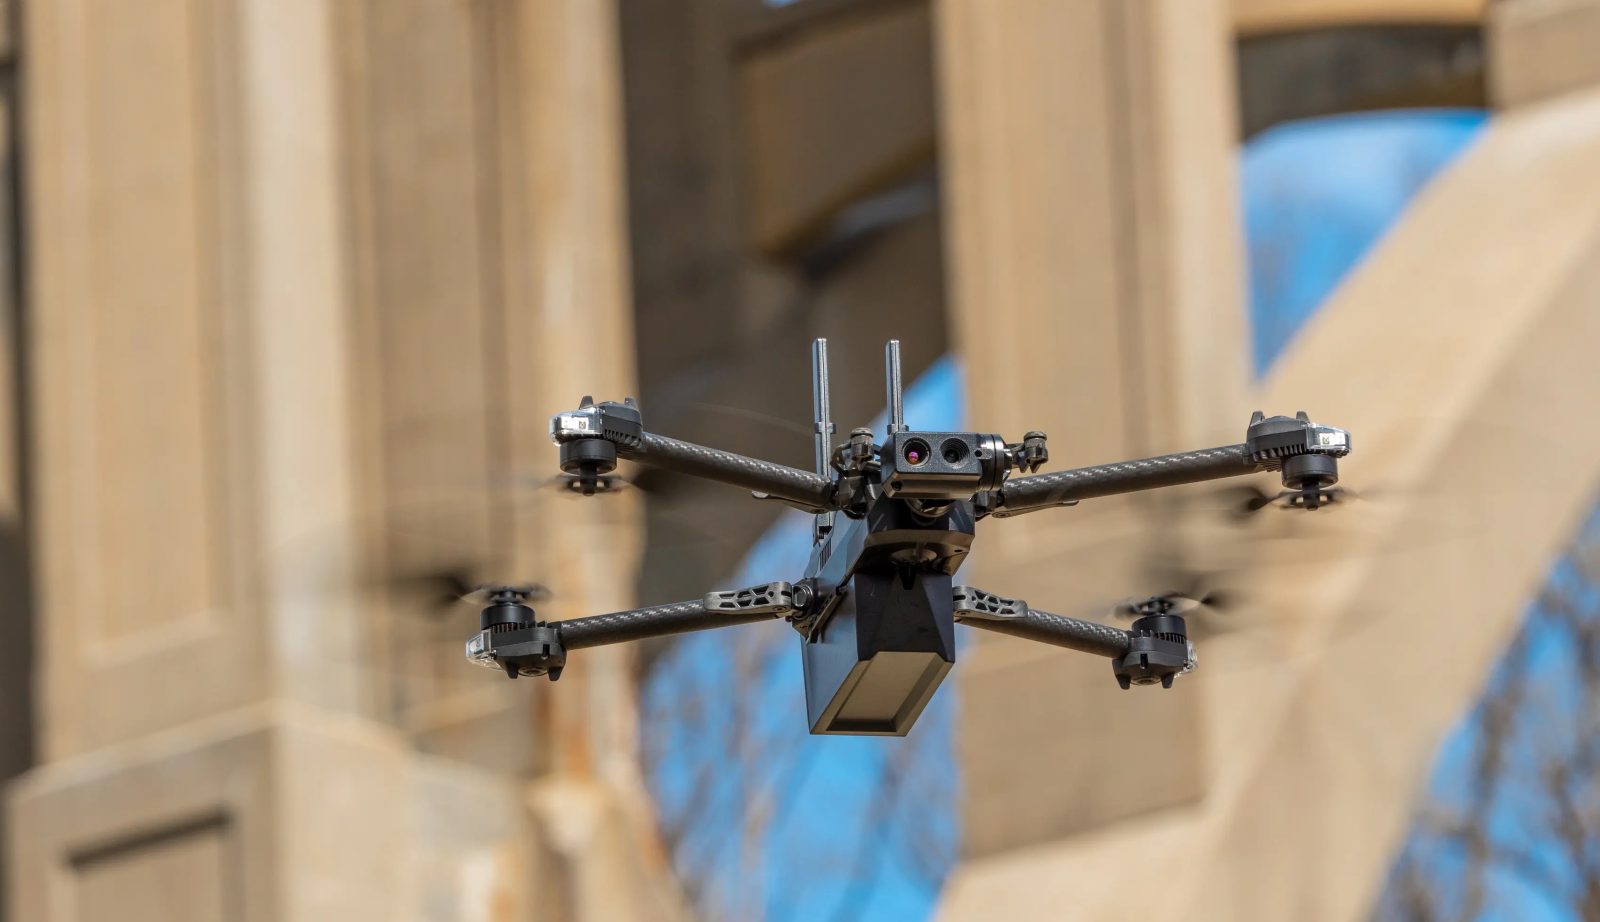 Dominion Skydio drones BVLOS inspection